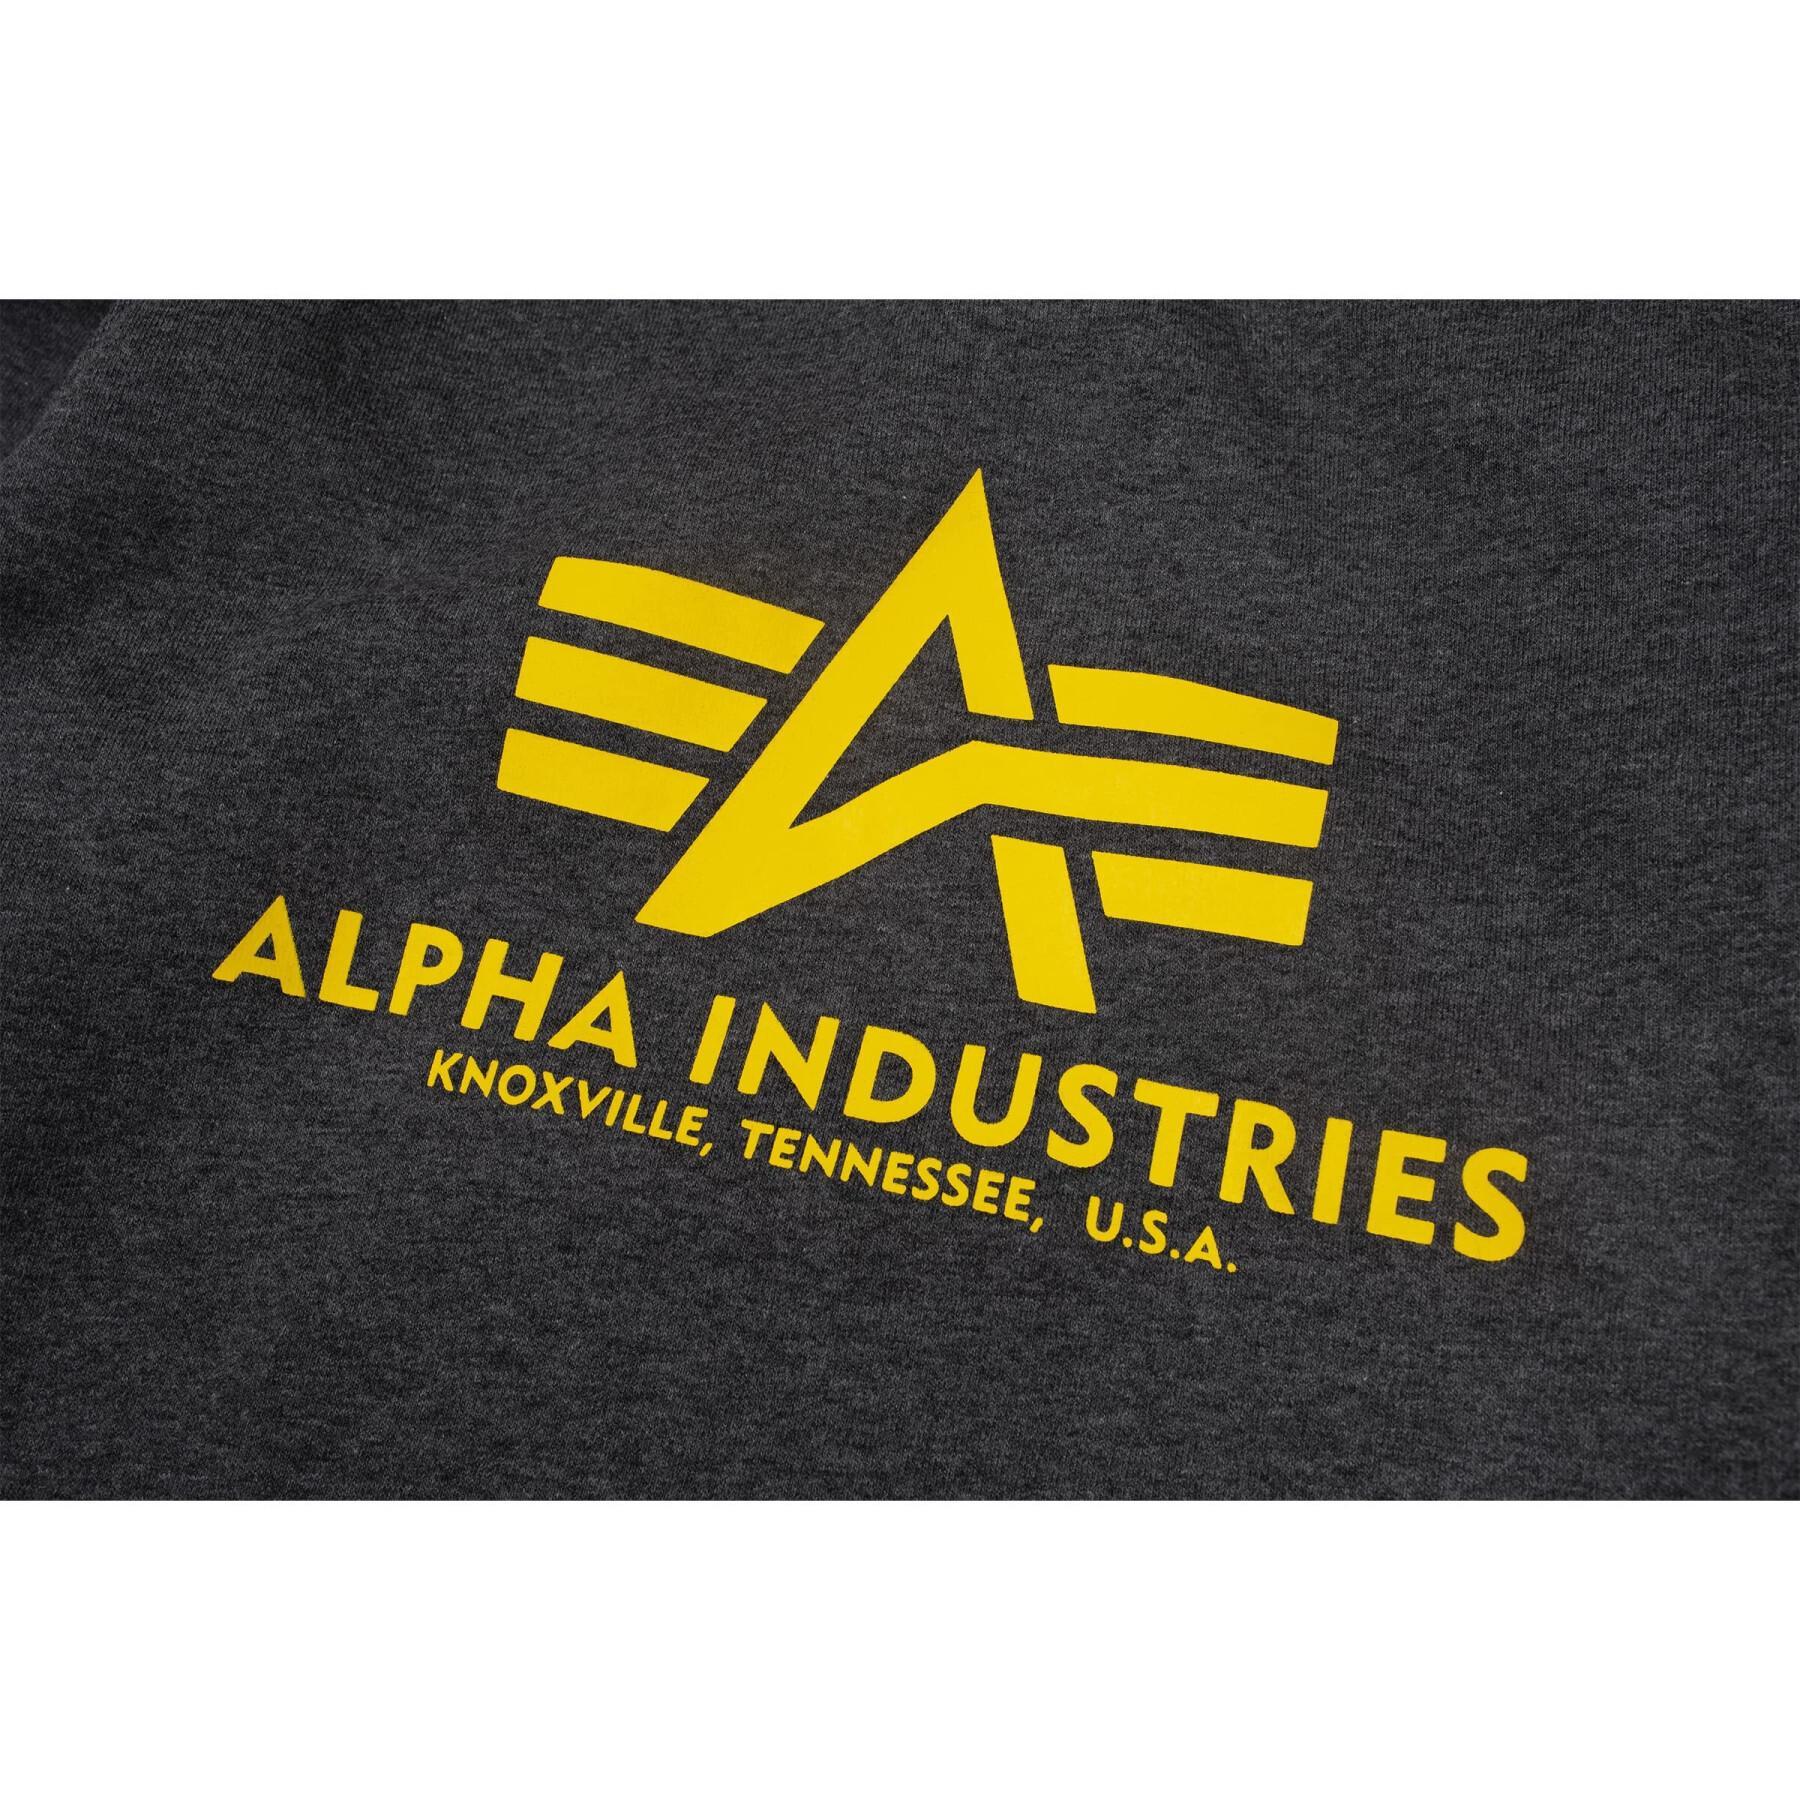 Bluza dziecięca Alpha Industries Basic